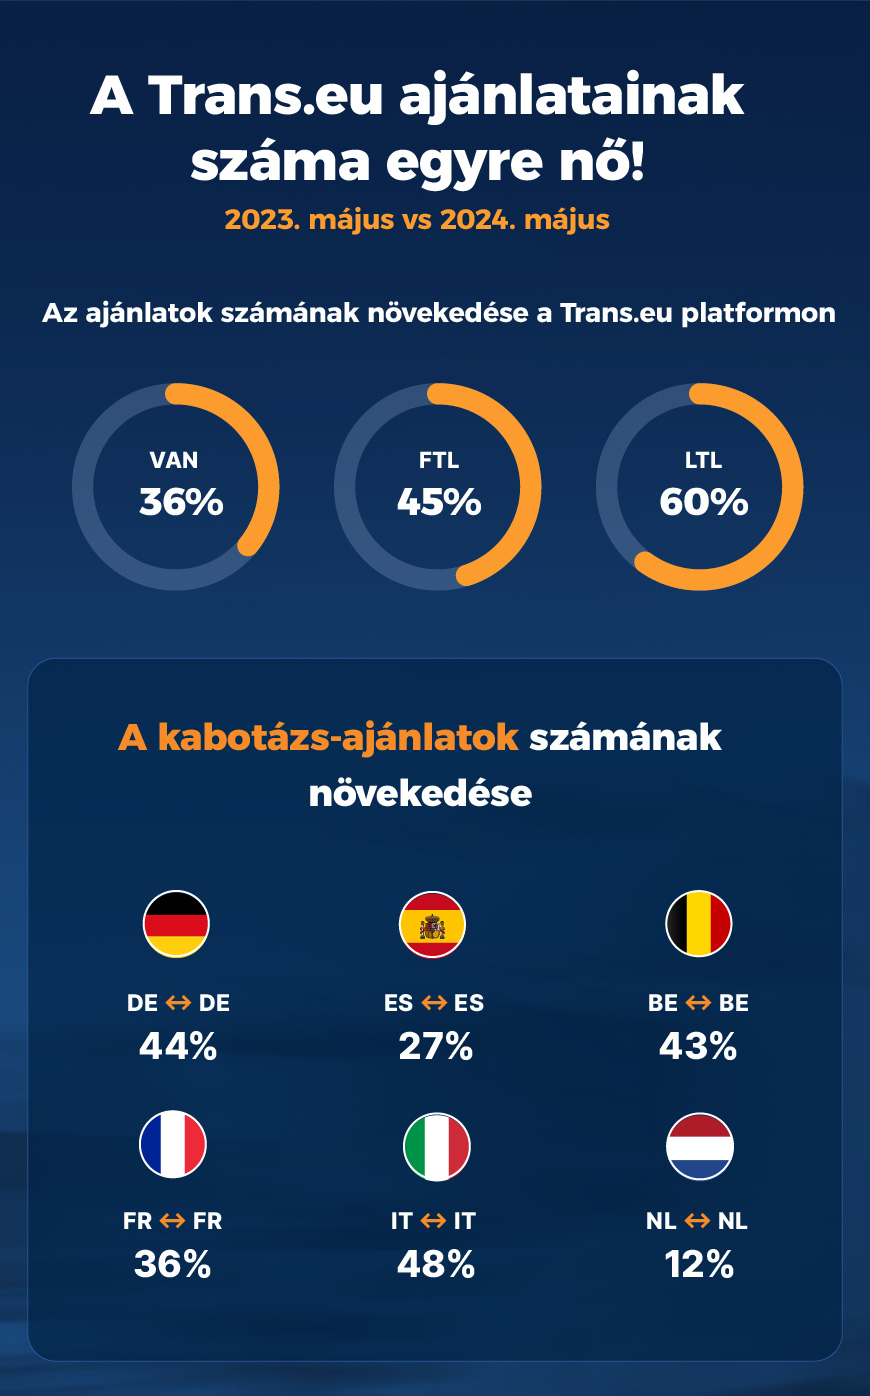 A Trans.eu ajánlatainak száma egyre nő!
Az ajánlatok számának növekedése a Trans.eu platformon
A kabotázs-ajánlatok számának növekedése